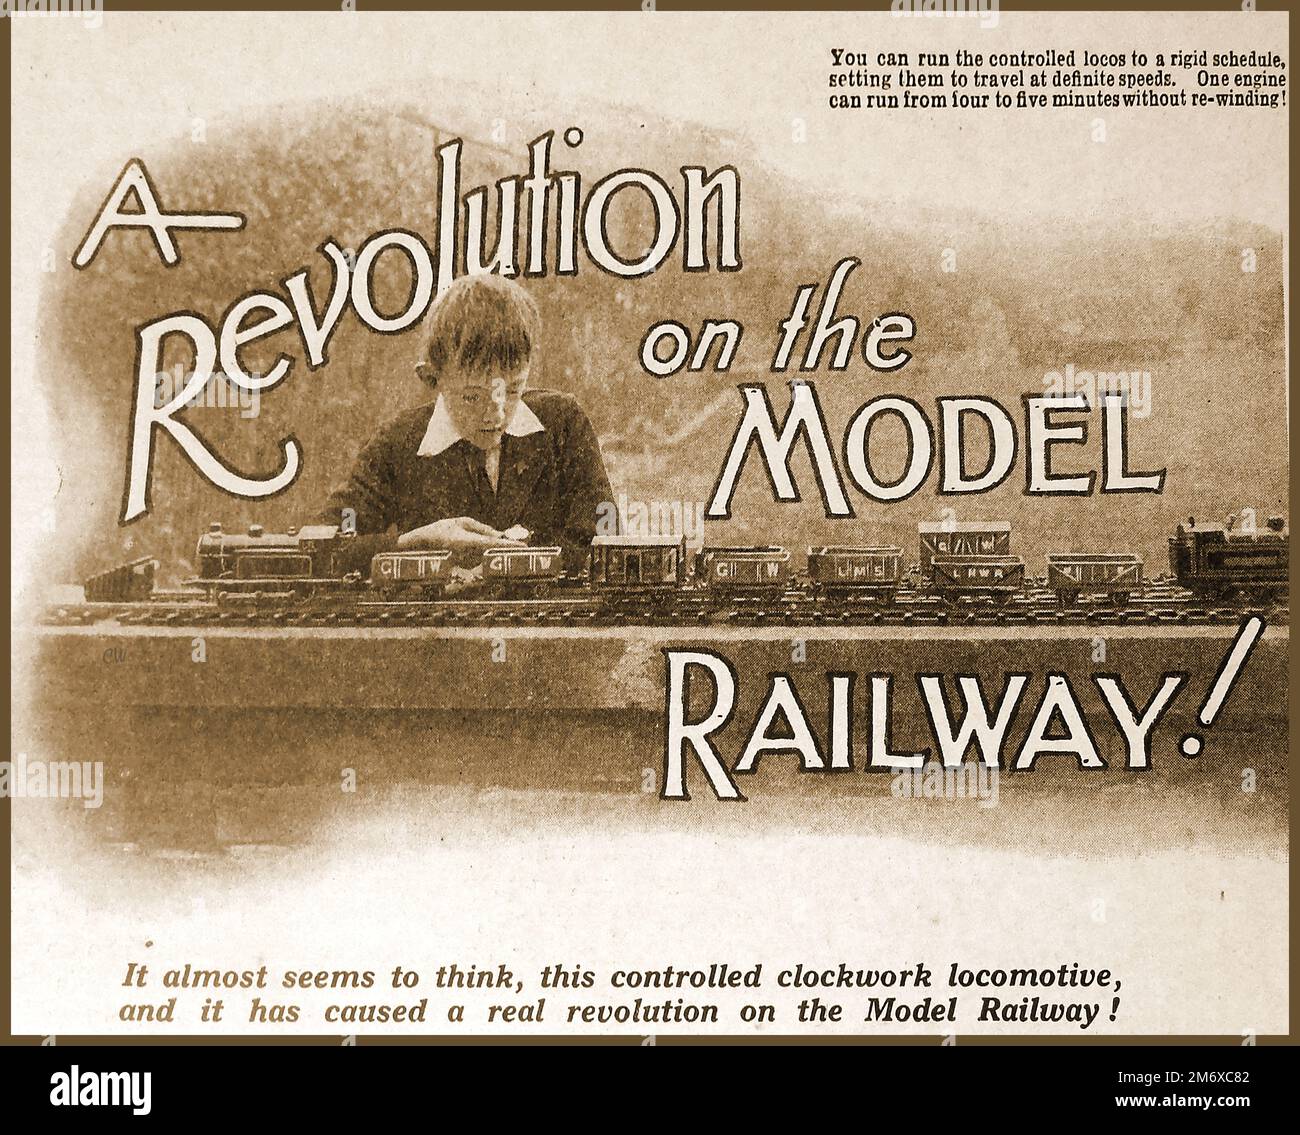 Une illustration de 1930 déclarant les modèles révolutionnaires de chemins de fer motorisés. Banque D'Images